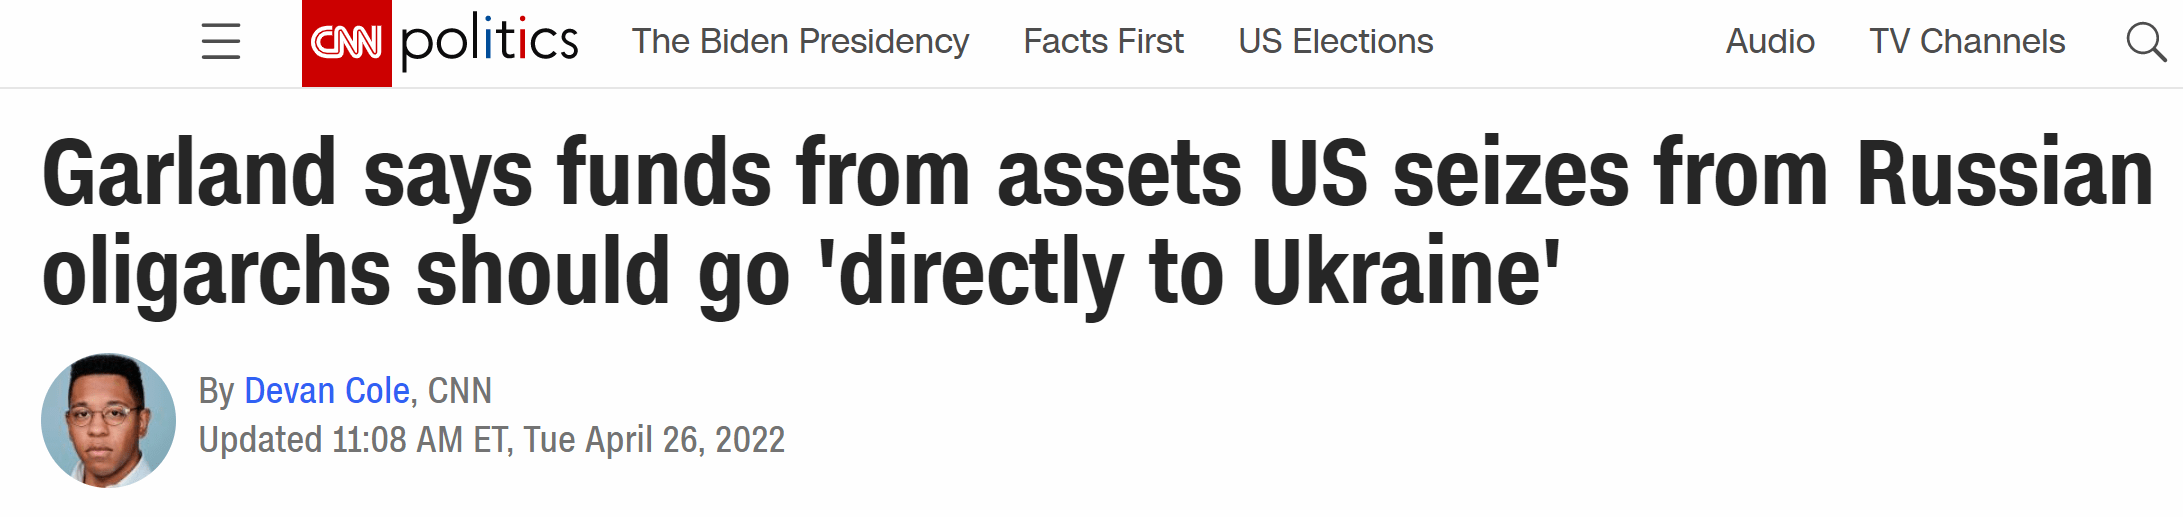 美司法部长：美政府支持把没收的俄富豪资产收益“直接转给乌克兰”